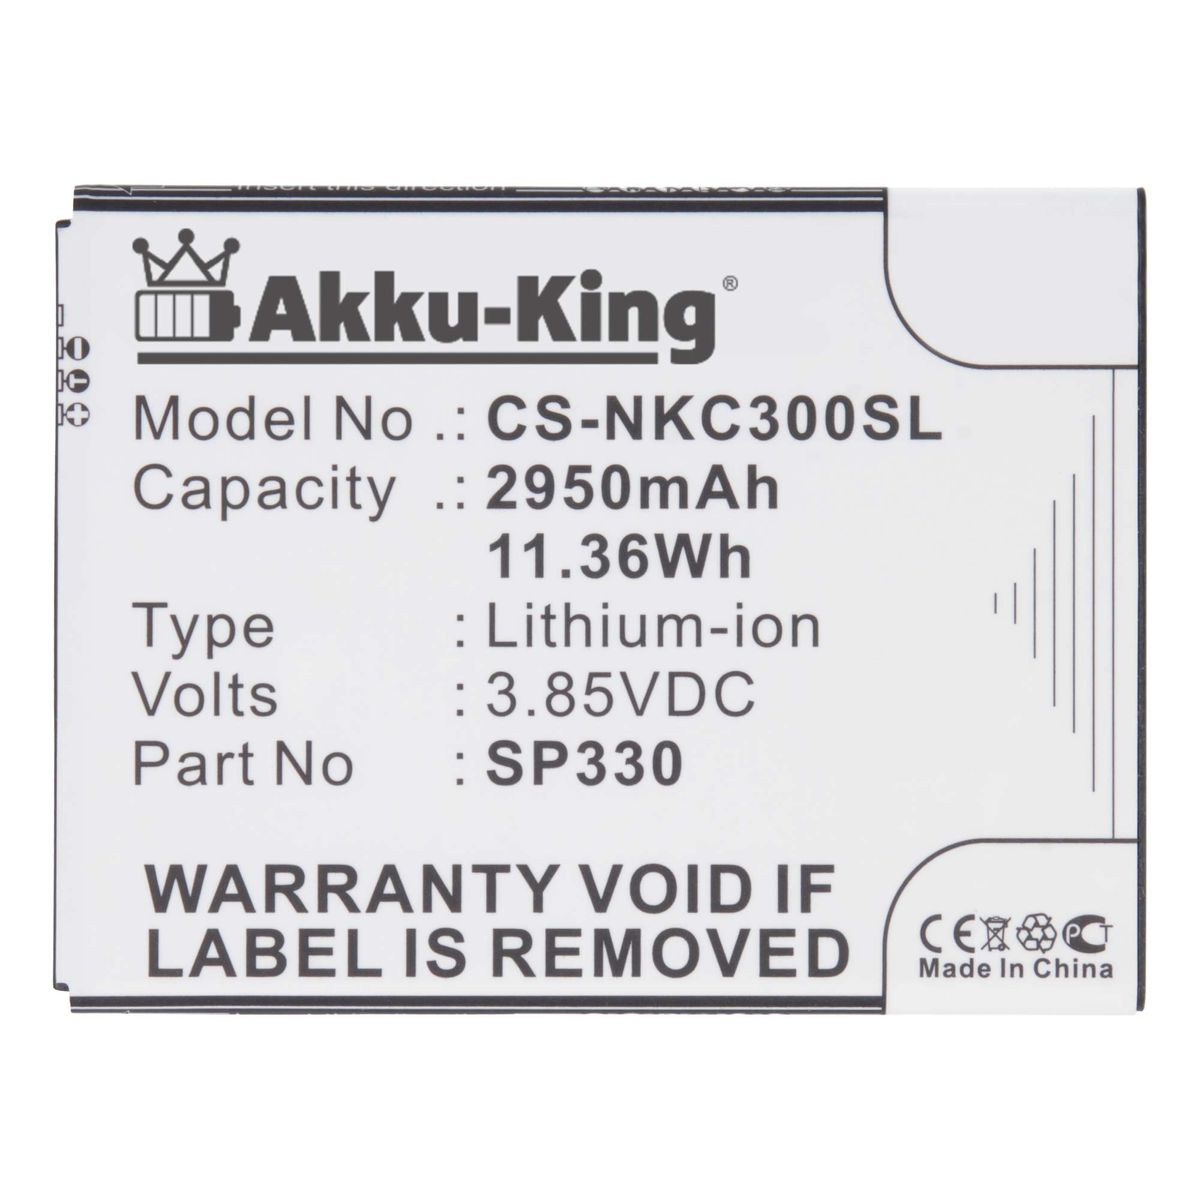 kompatibel AKKU-KING Volt, 3.85 mit SP330 Nokia 2950mAh Handy-Akku, Akku Li-Ion